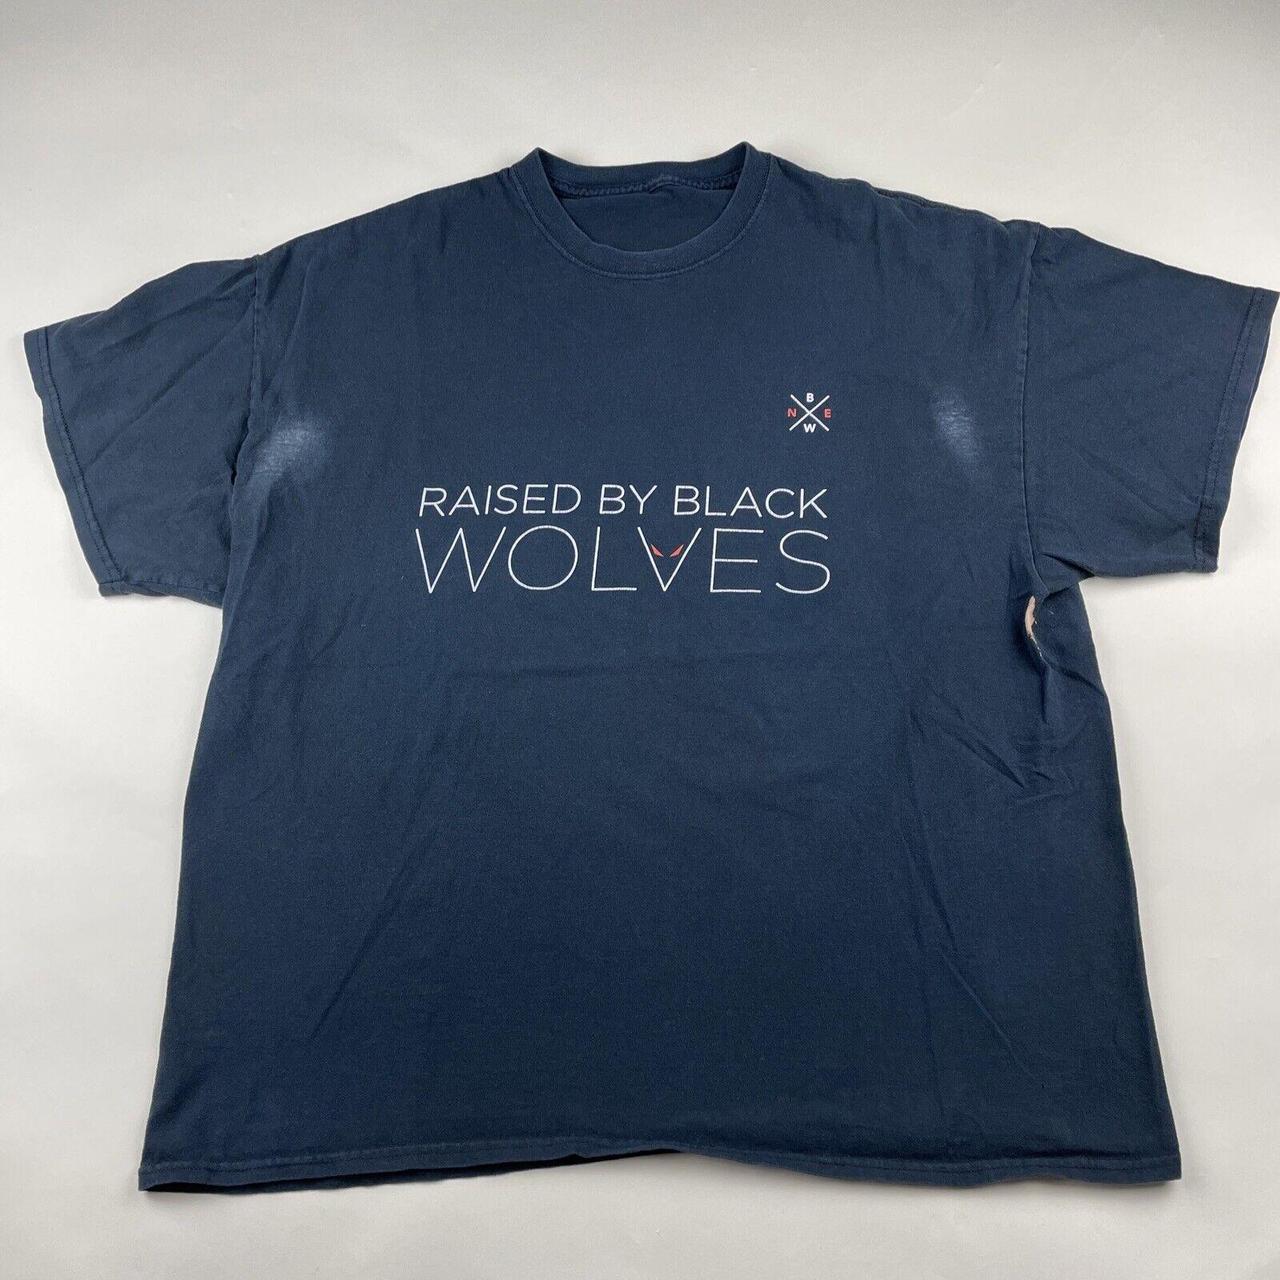 iHome Men's Black T-shirt